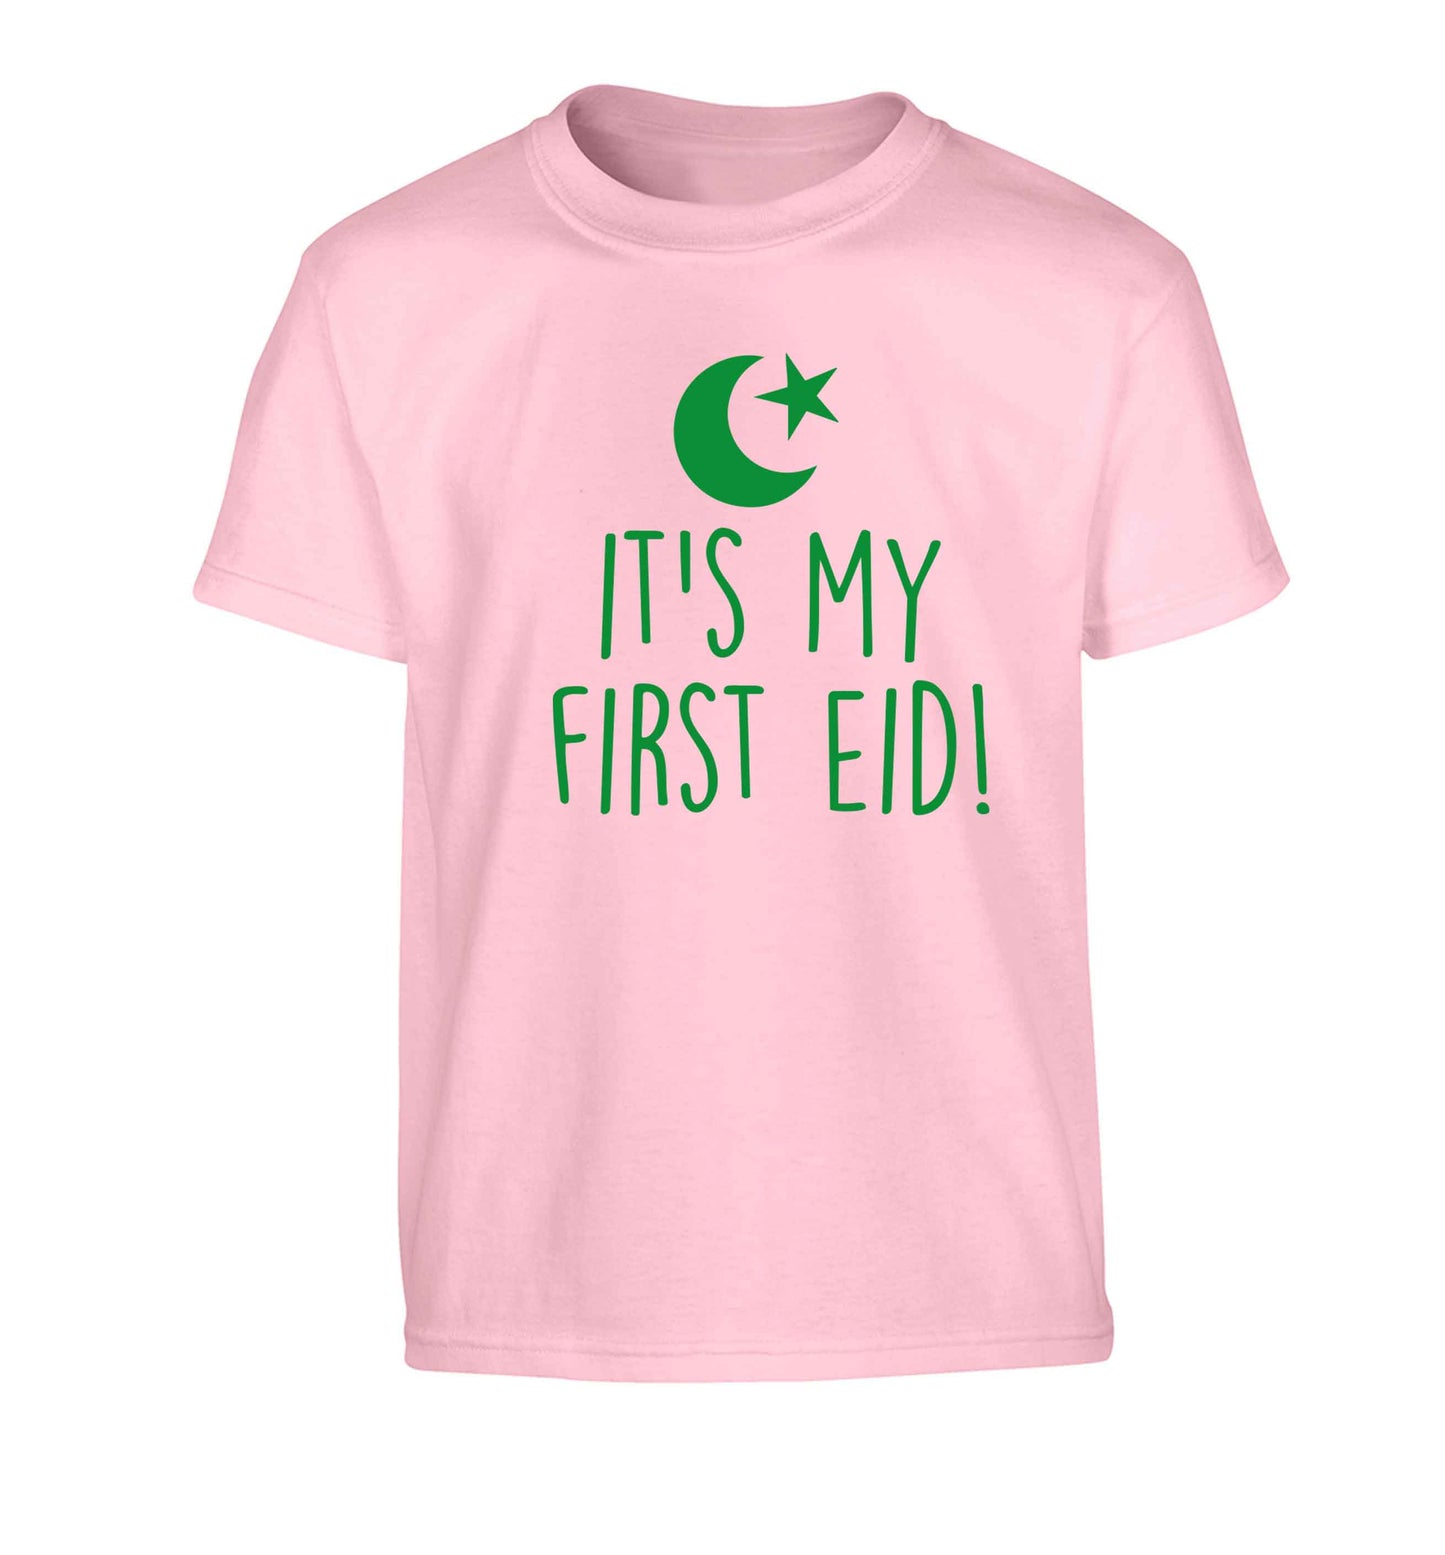 It's my first Eid Children's light pink Tshirt 12-13 Years